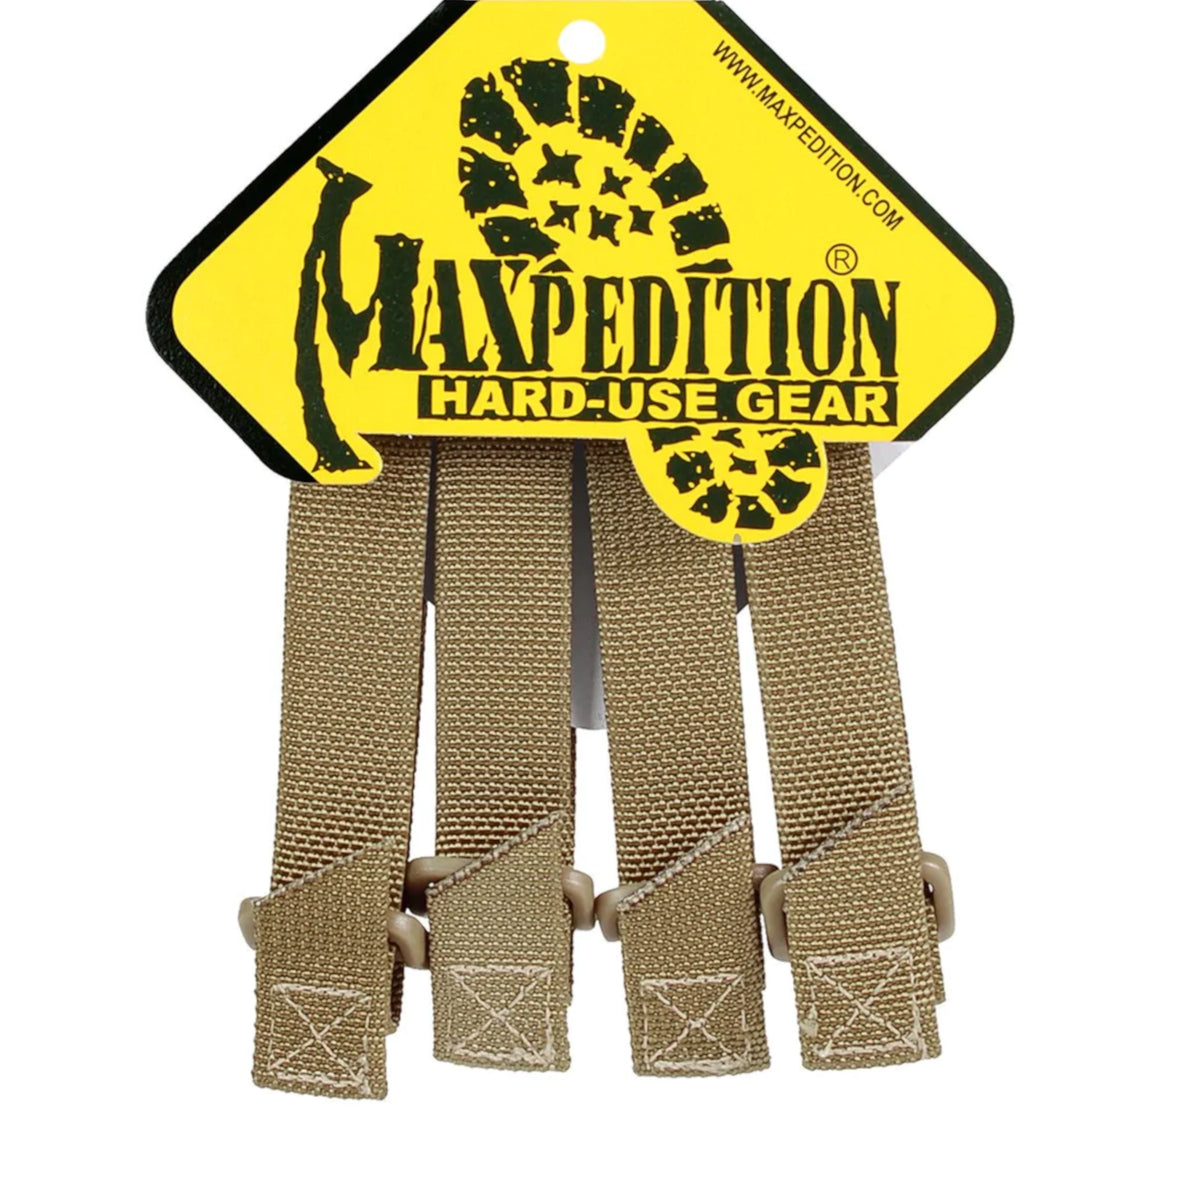 Le TacTie di Maxpedition nella variante khaki da 7.6cm nella loro confezione